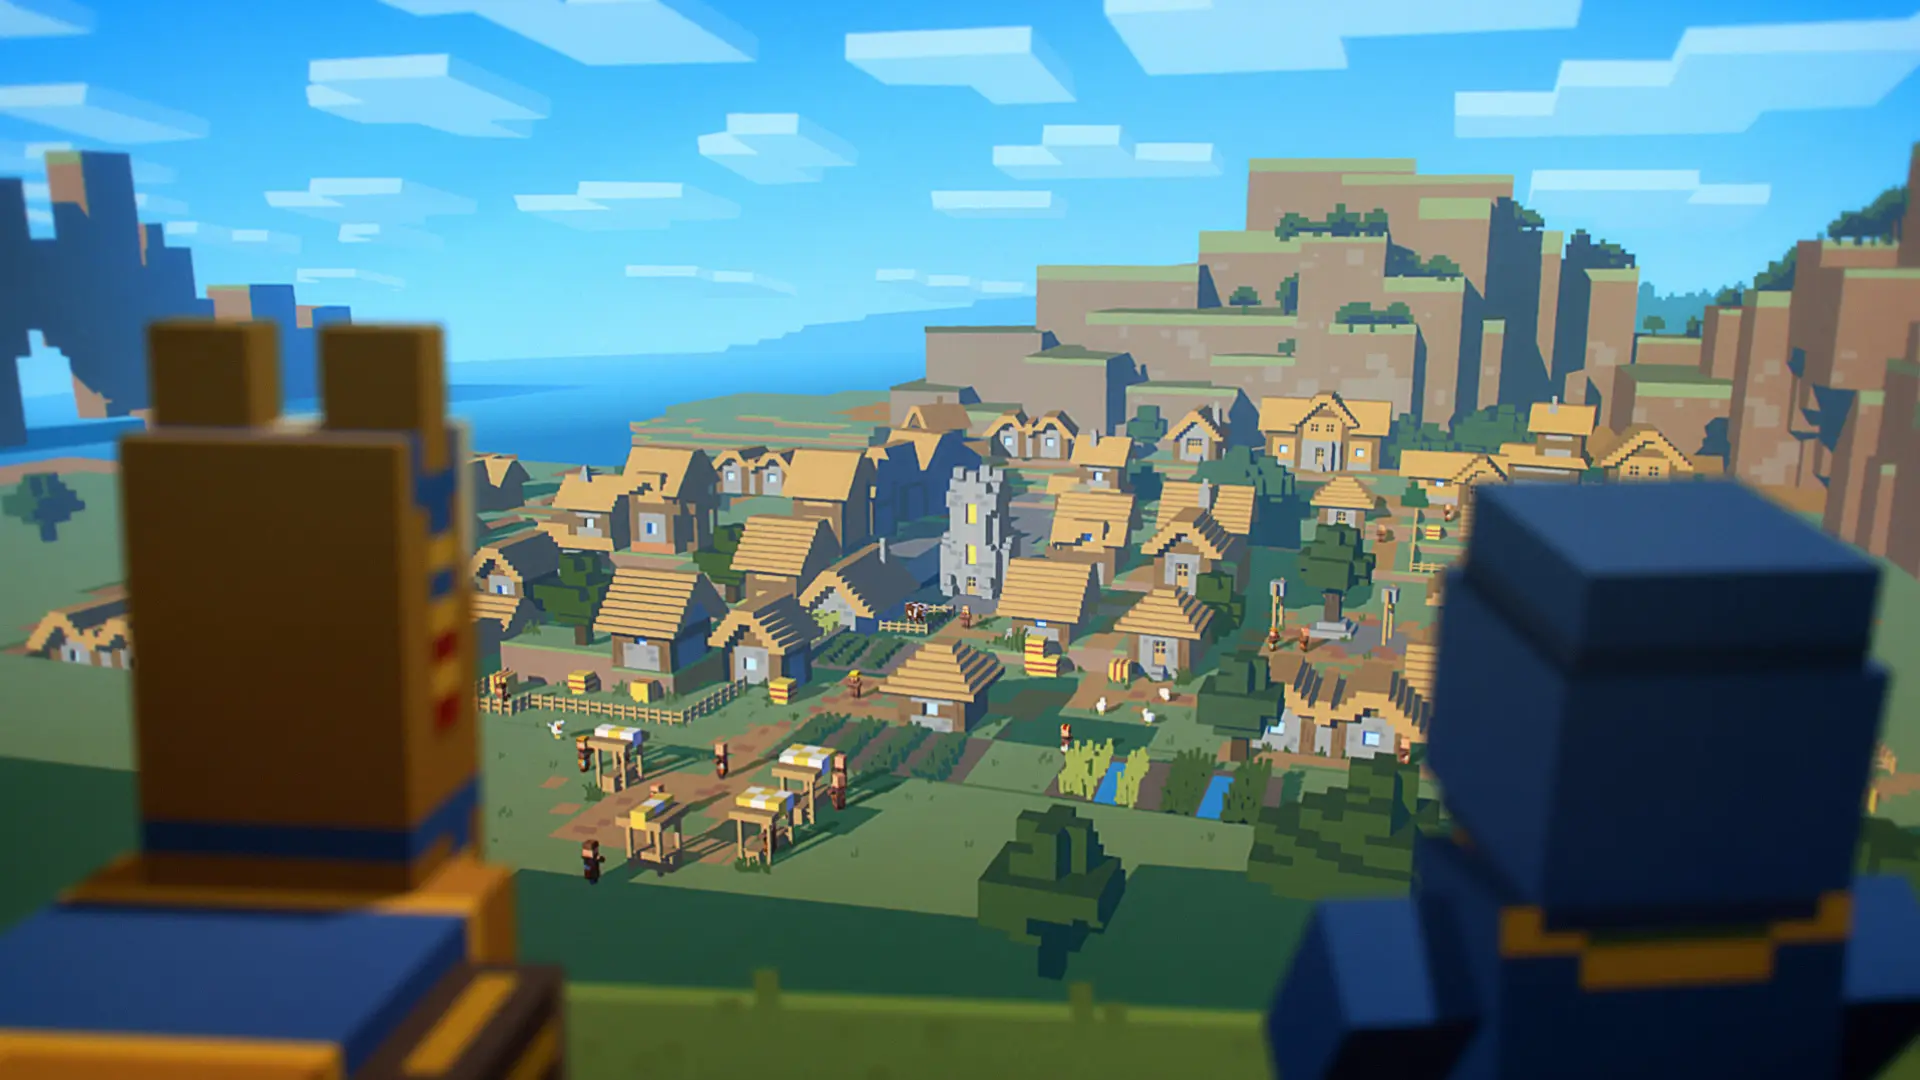 Minecraft – Village and Pillage